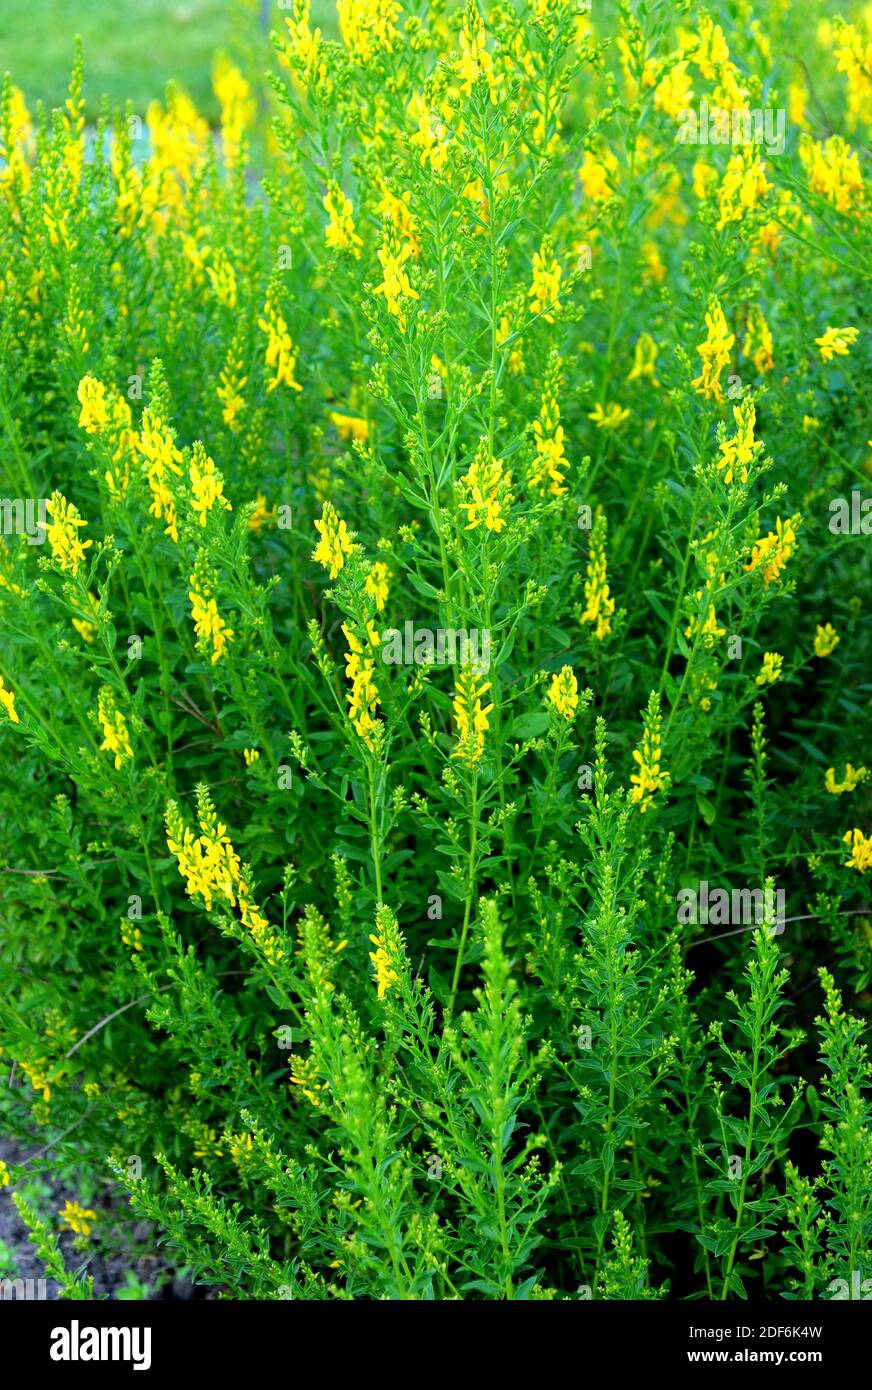 Dyer escoba (Genista tinctoria) es un arbusto dyer y medicinal nativo de Europa y Turquía. Foto de stock